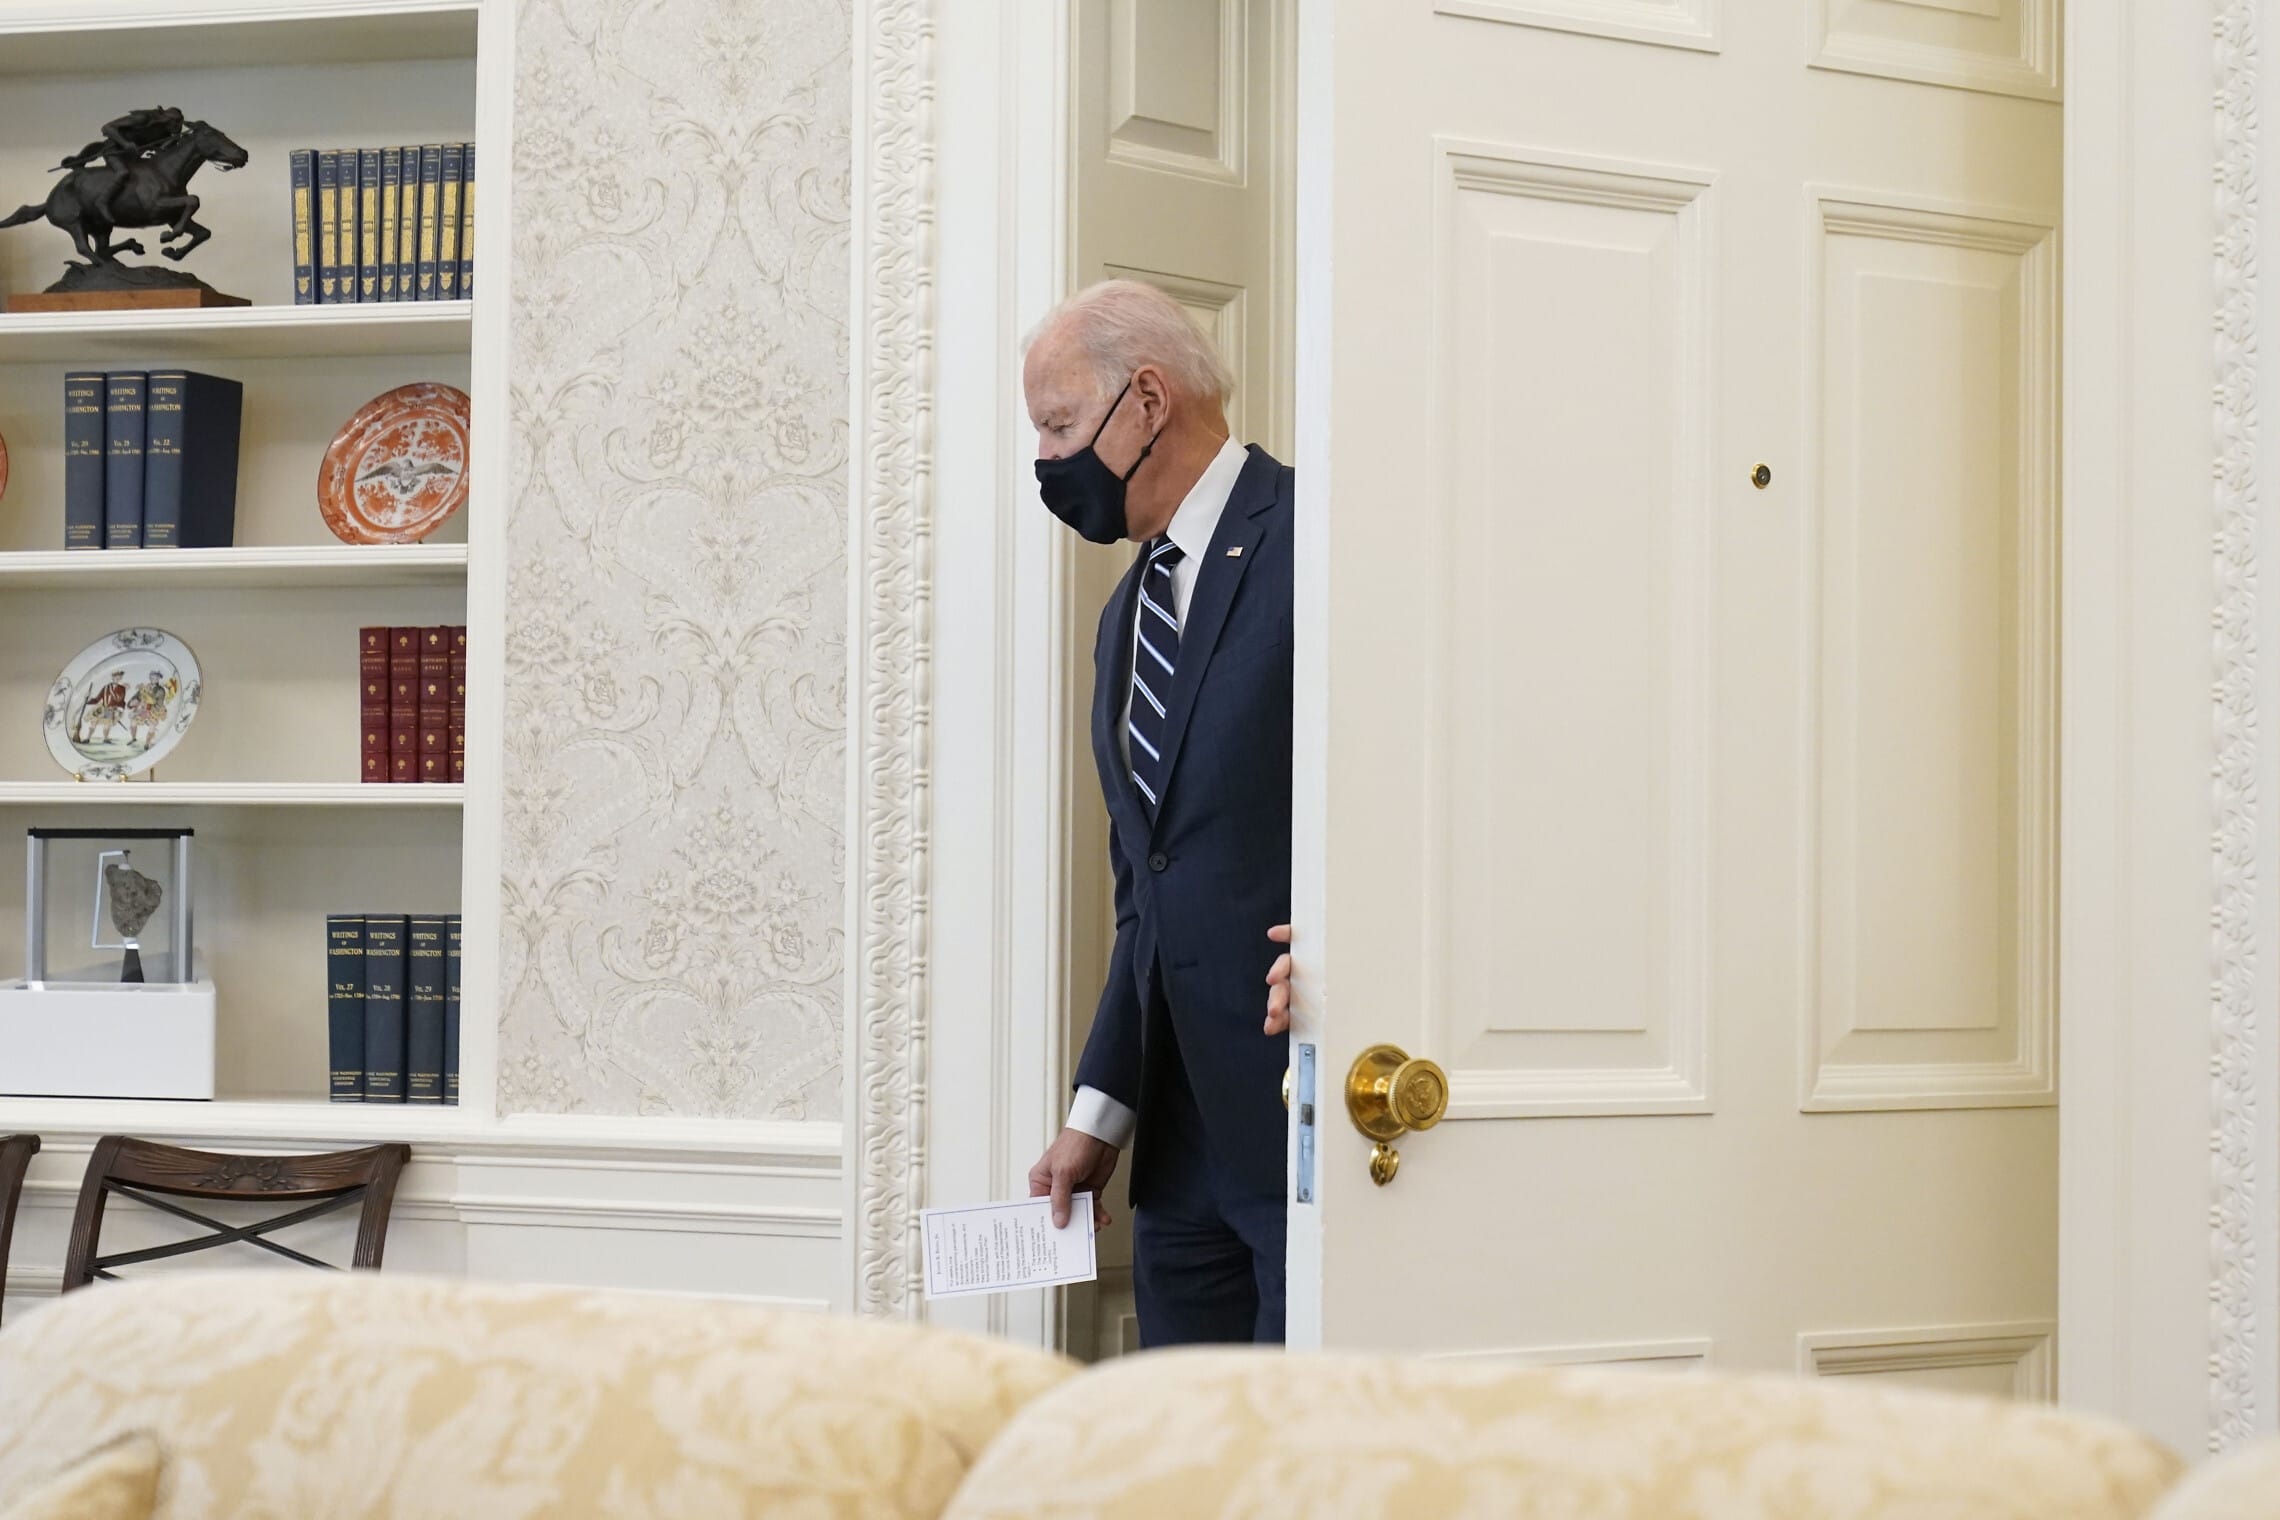 נשיא ארה"ב ג'ו ביידן נכנס לחדר הסגלגל בבית הלבן, 11 במרץ 2021 (צילום: AP Photo/Andrew Harnik)